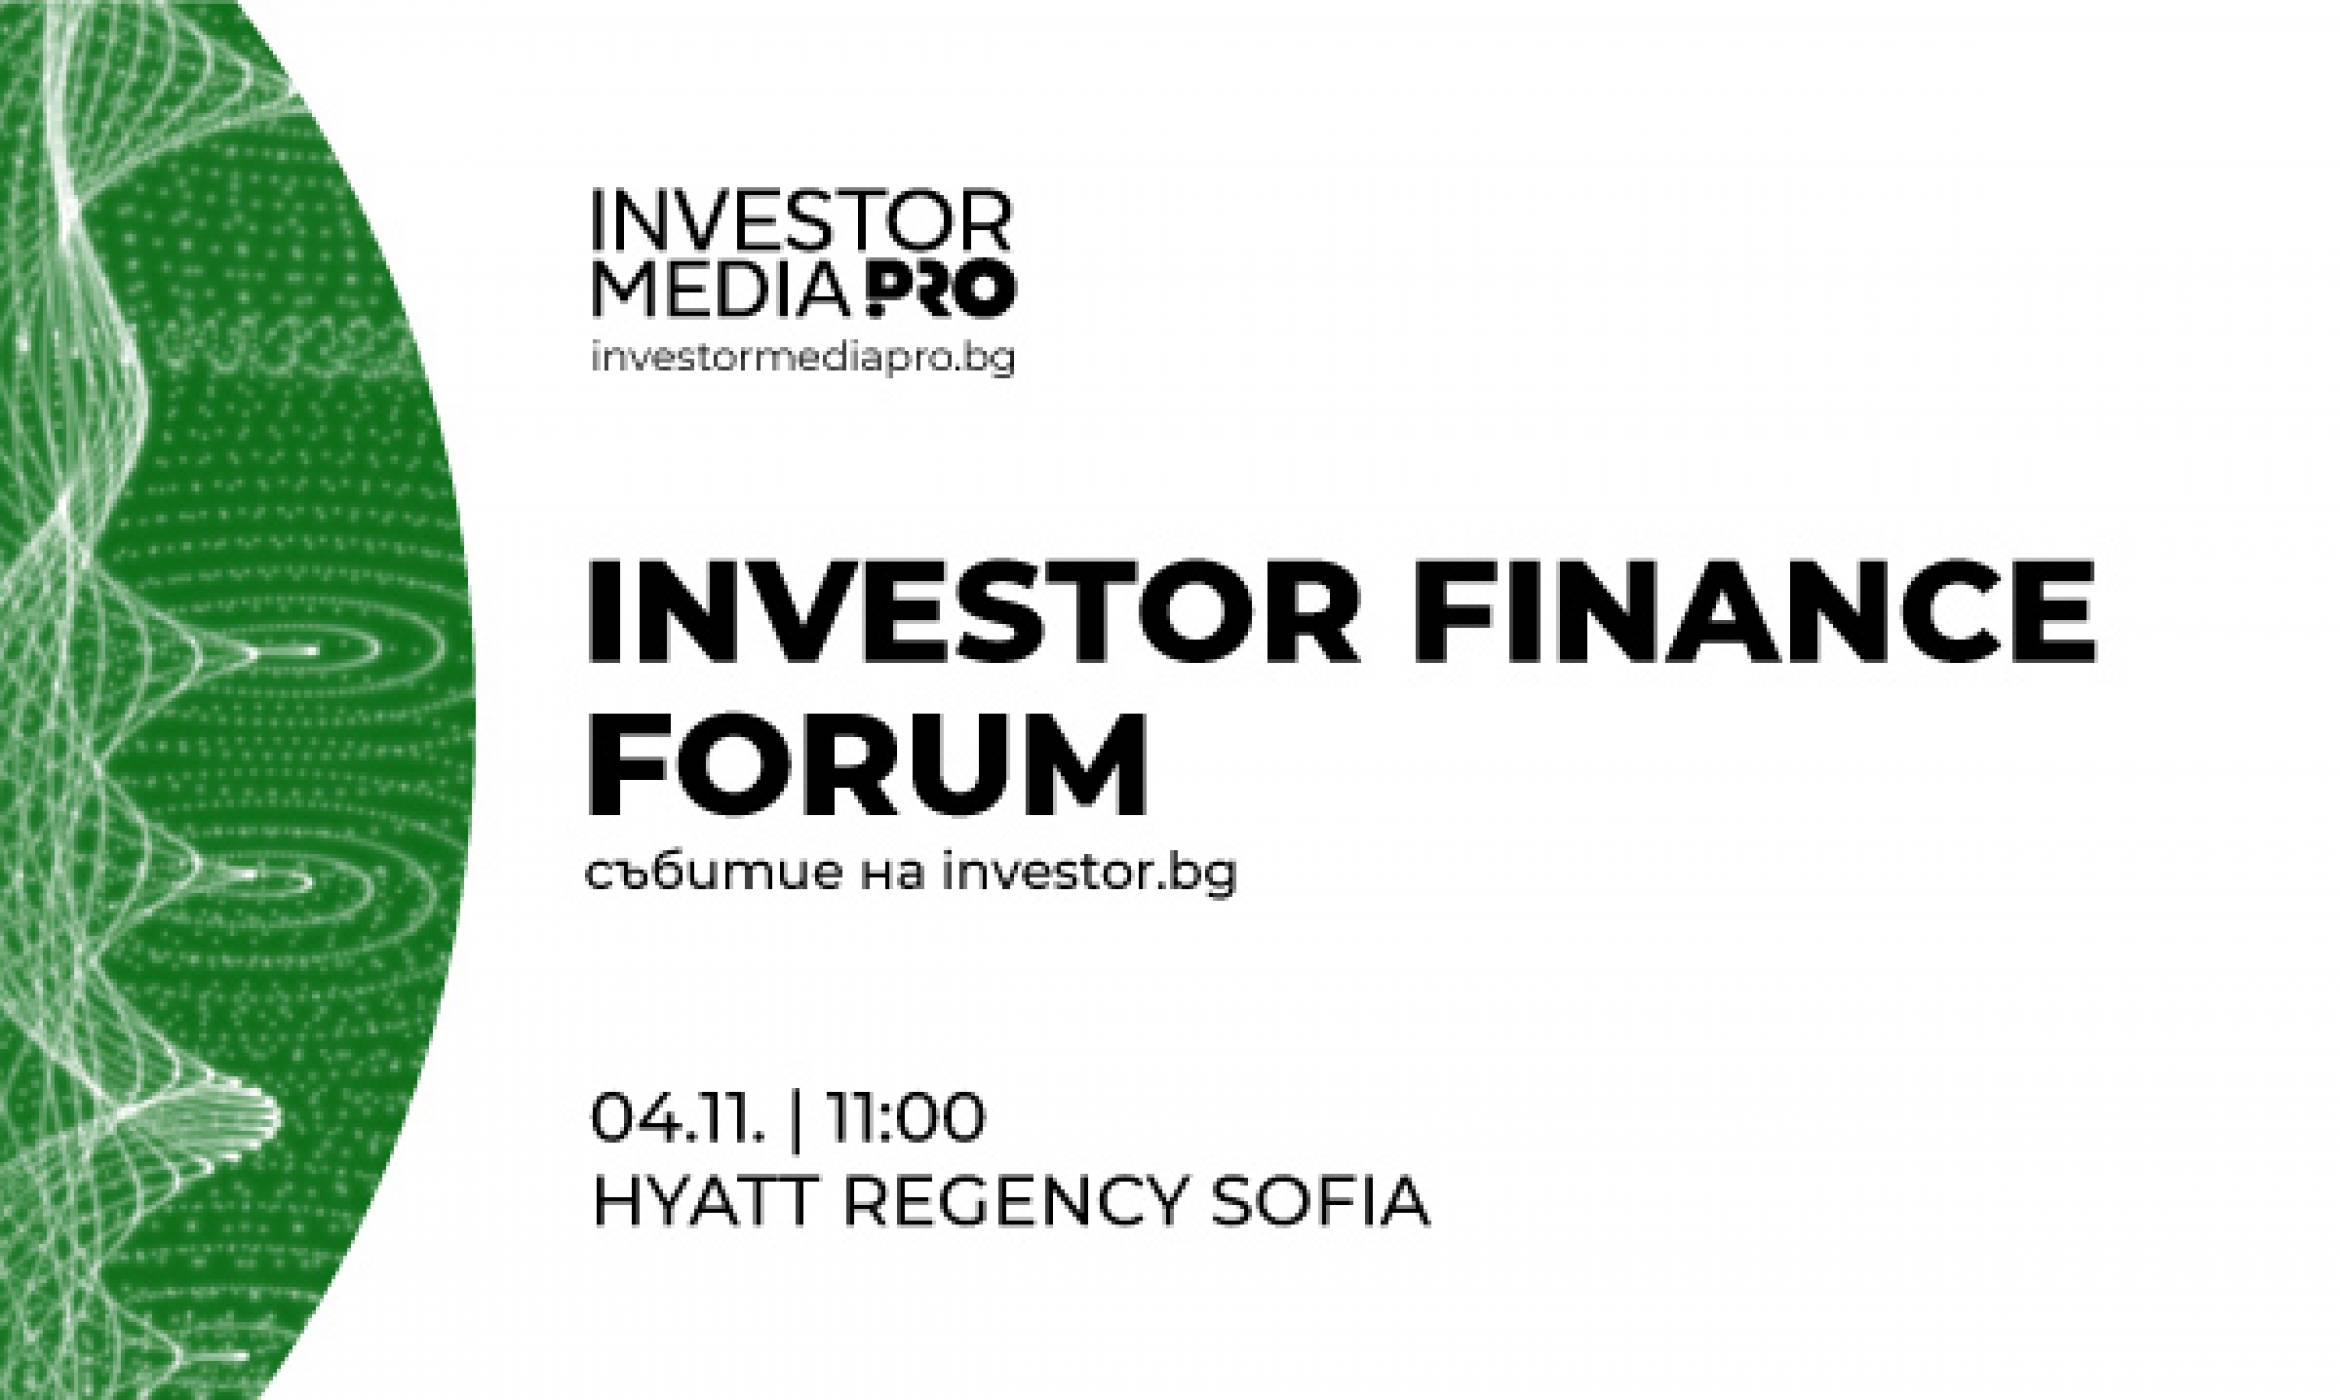 Финансови експерти, инвеститори и бизнес анализатори разкриват промените в макроикономическата среда в новото издание на Investor Finance Forum